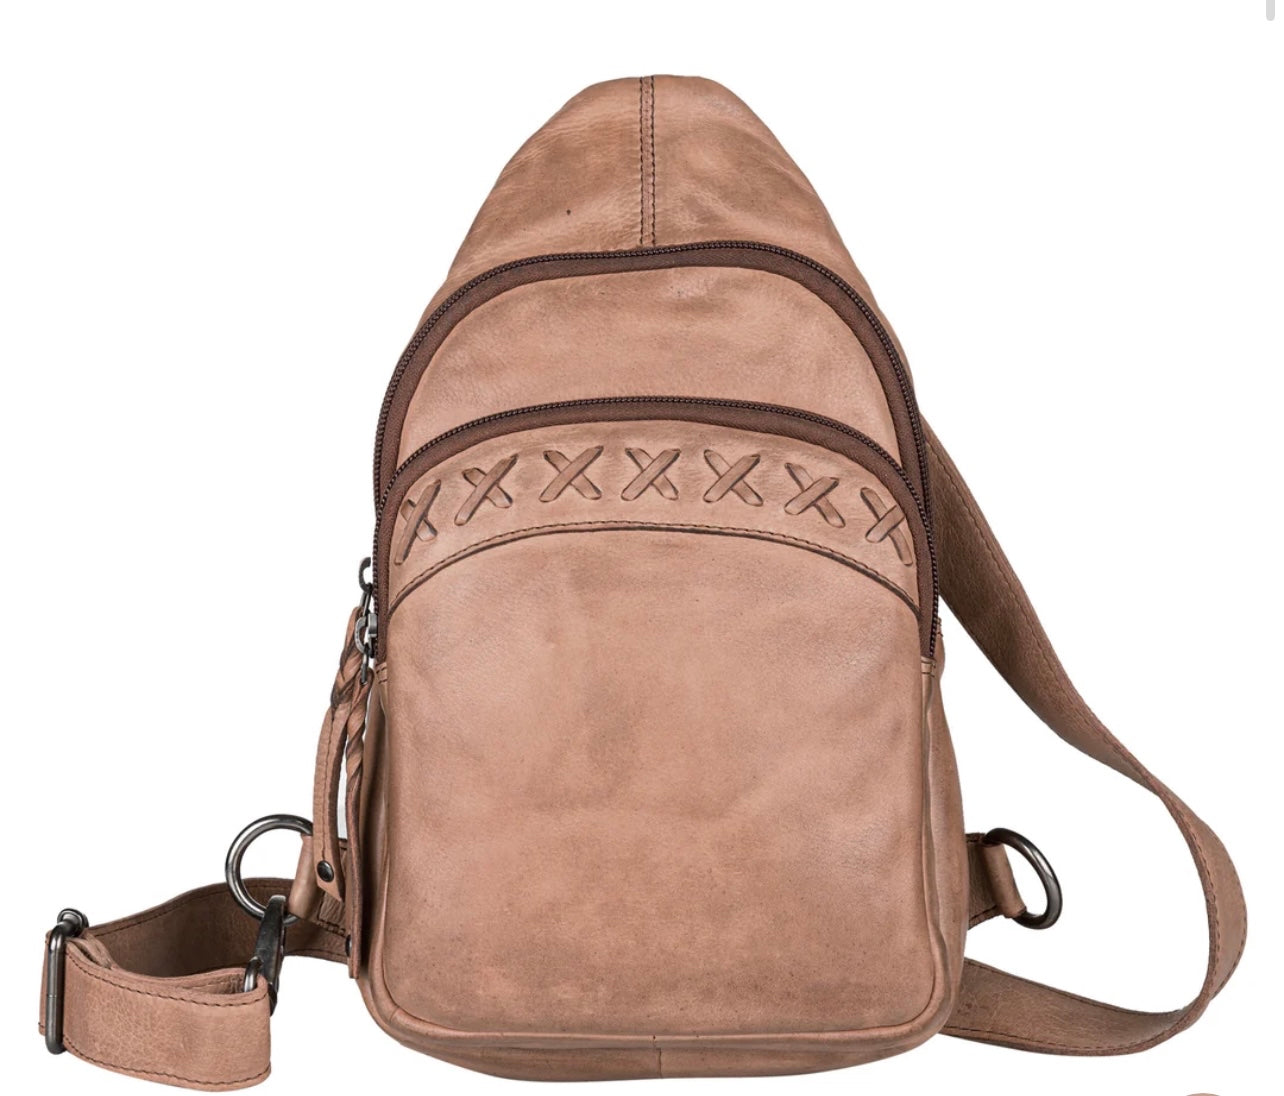 Taylor Leather Concealed Carry Sling Backpack - Hiding Hilda, LLC